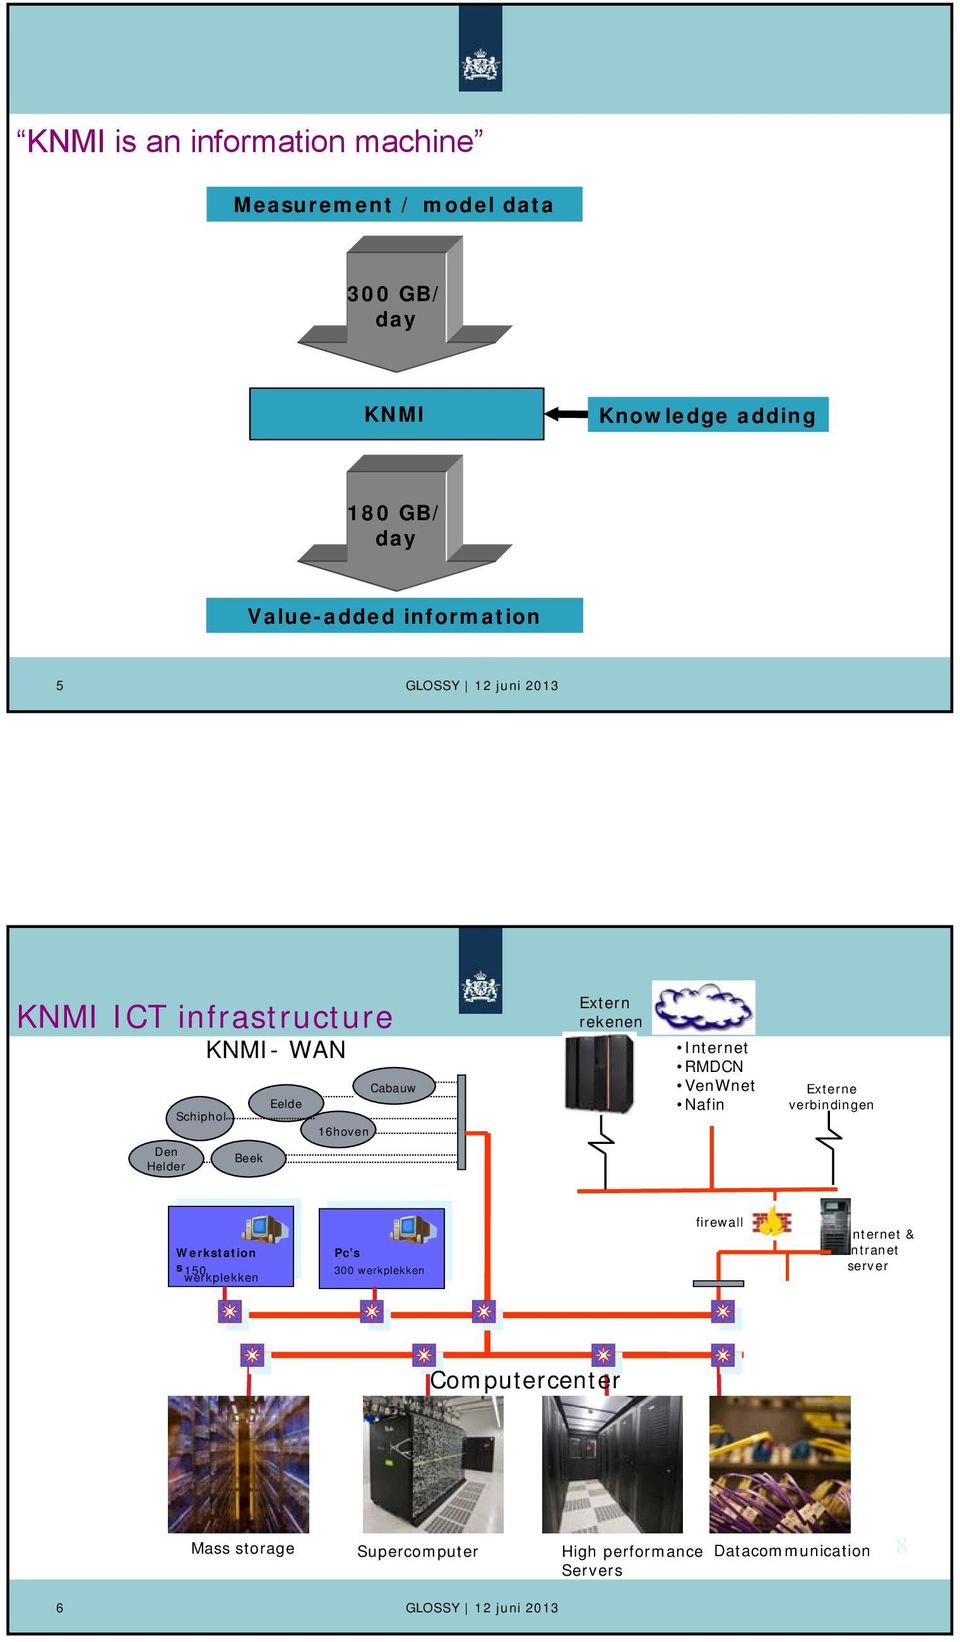 Extern rekenen Internet RMDCN VenWnet Nafin Externe verbindingen Werkstation s150 werkplekken Pc s 300